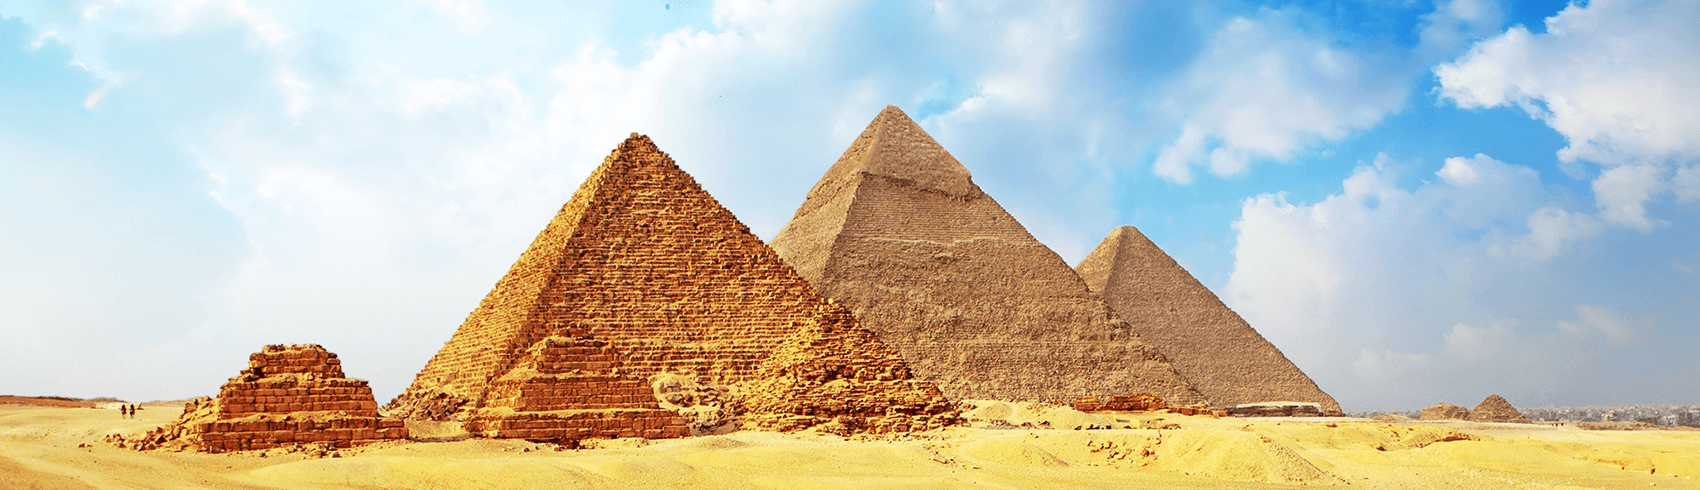 عروض السفر الى مصر